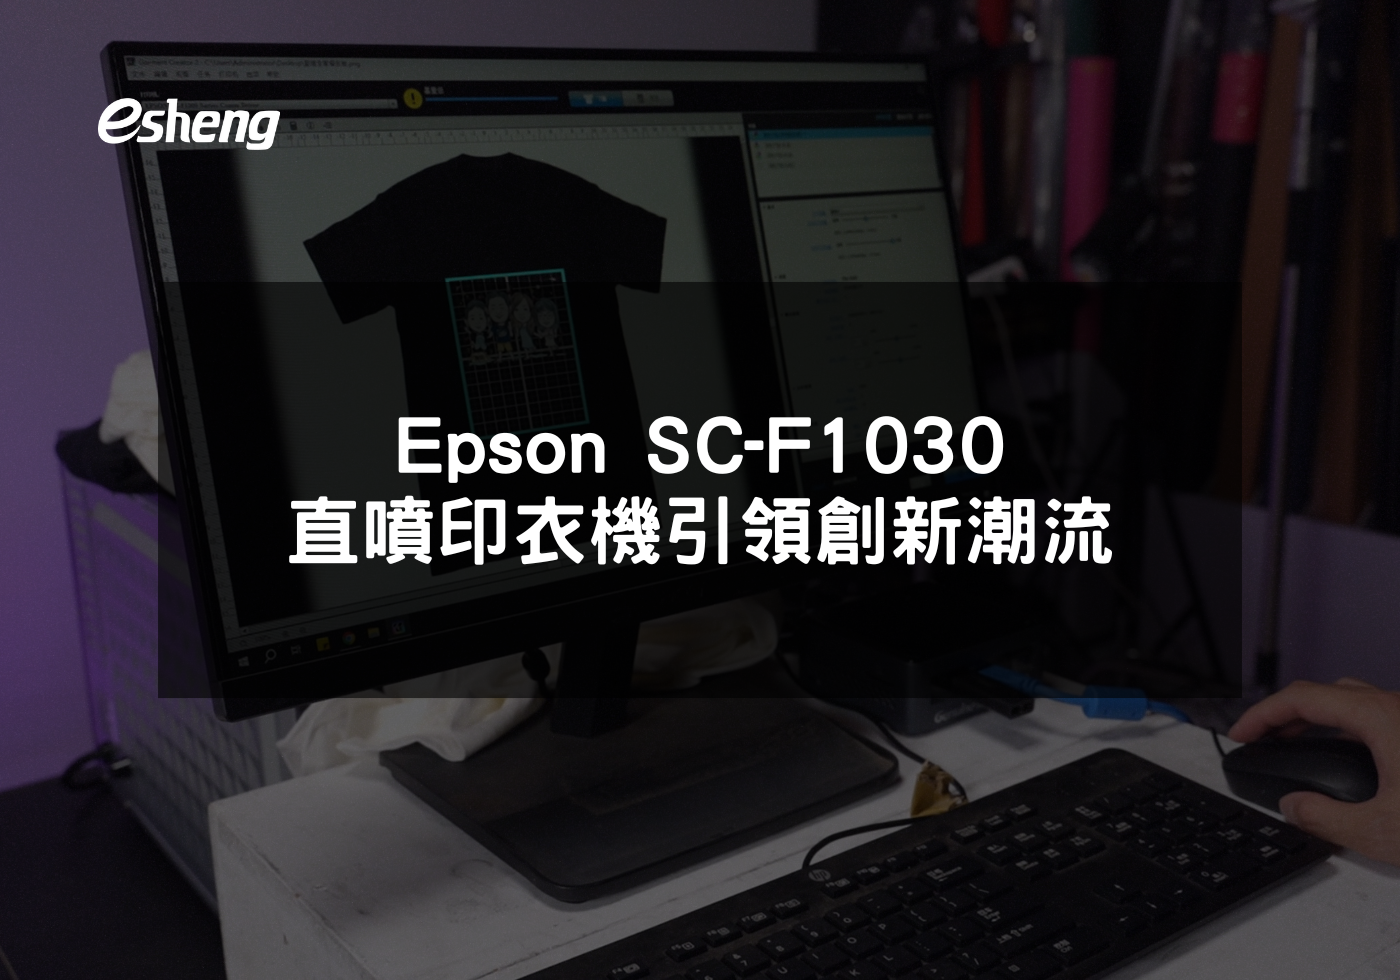 您目前正在查看 Epson SC-F1030直噴印衣機引領創新潮流